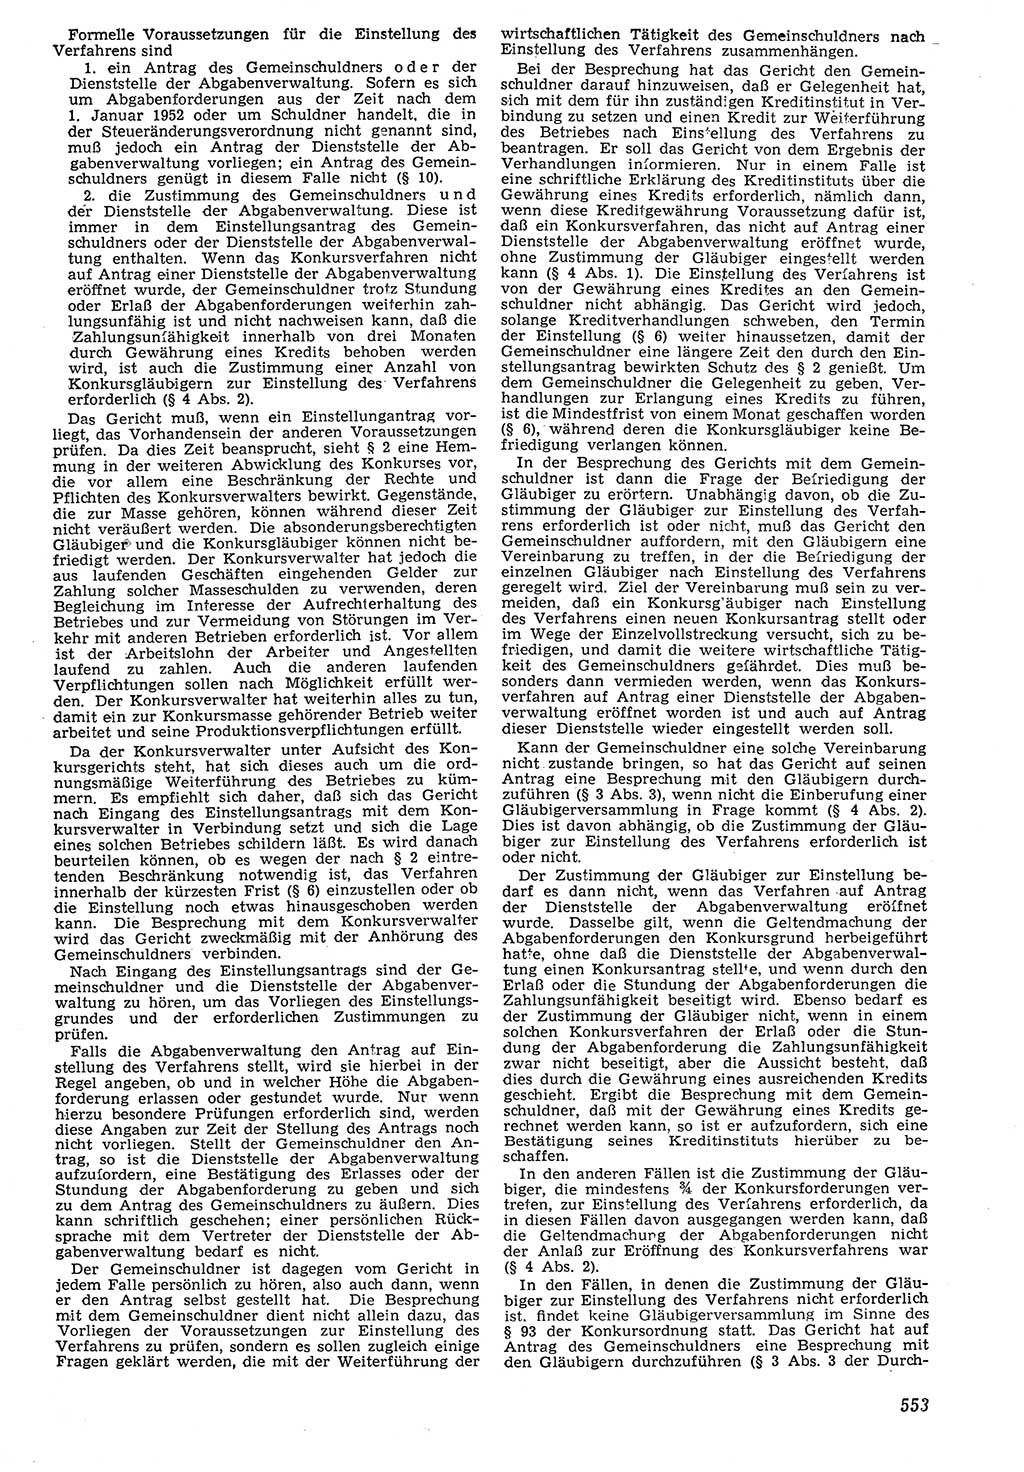 Neue Justiz (NJ), Zeitschrift für Recht und Rechtswissenschaft [Deutsche Demokratische Republik (DDR)], 7. Jahrgang 1953, Seite 553 (NJ DDR 1953, S. 553)